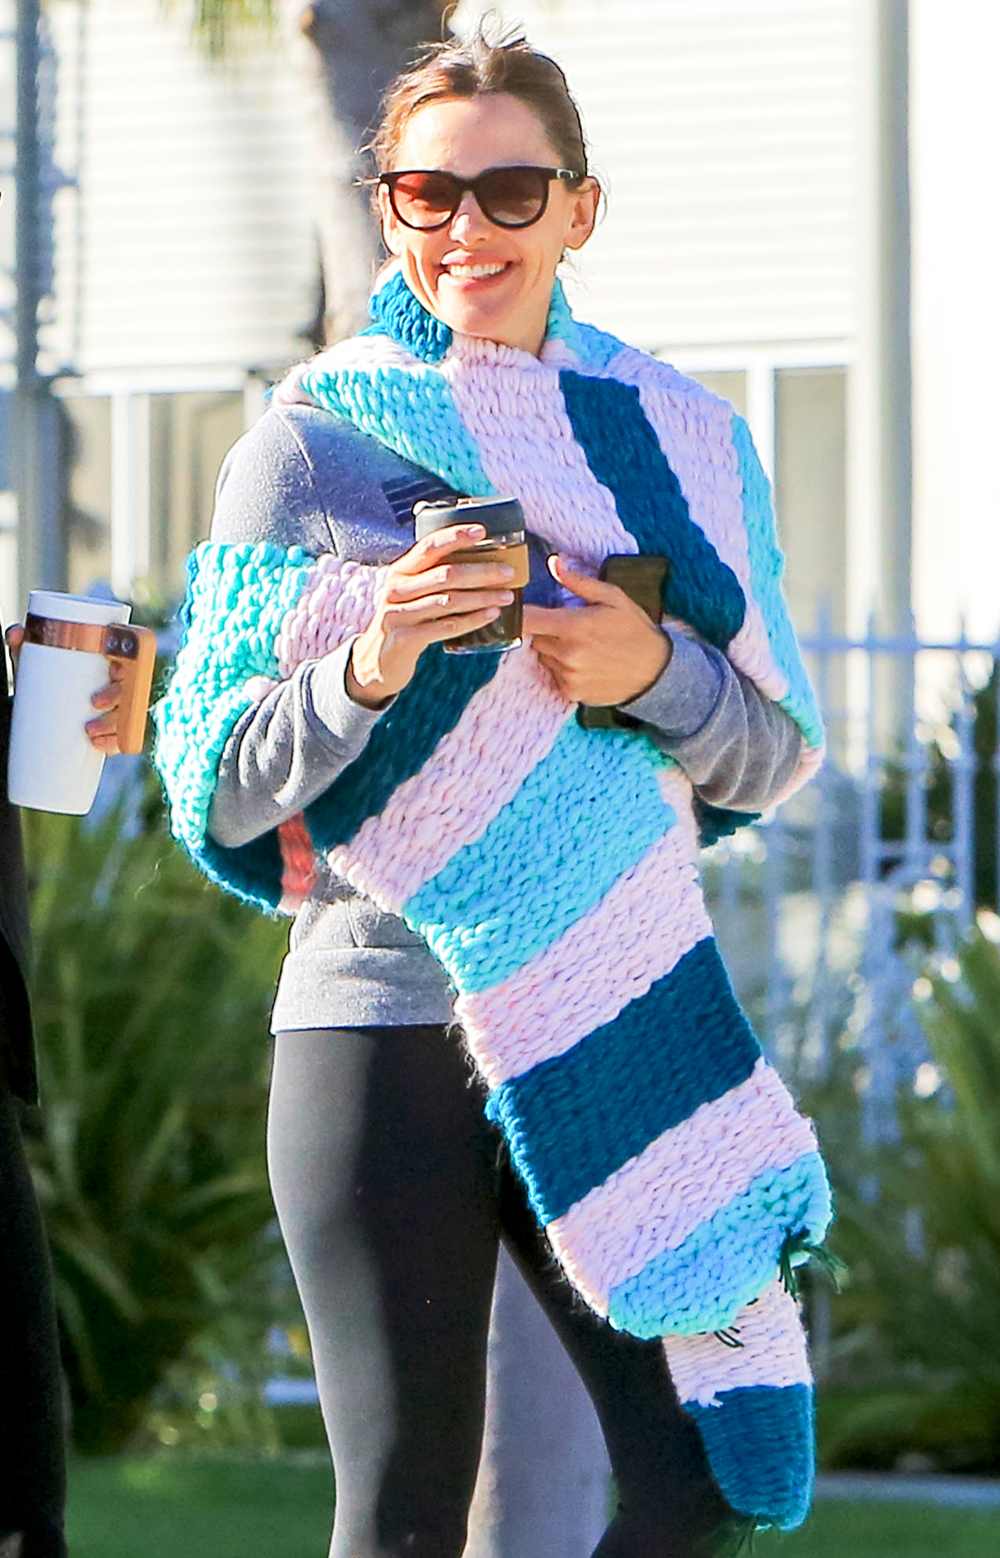 Jennifer Garner steps out on April 17, 2018 in Los Angeles, California.